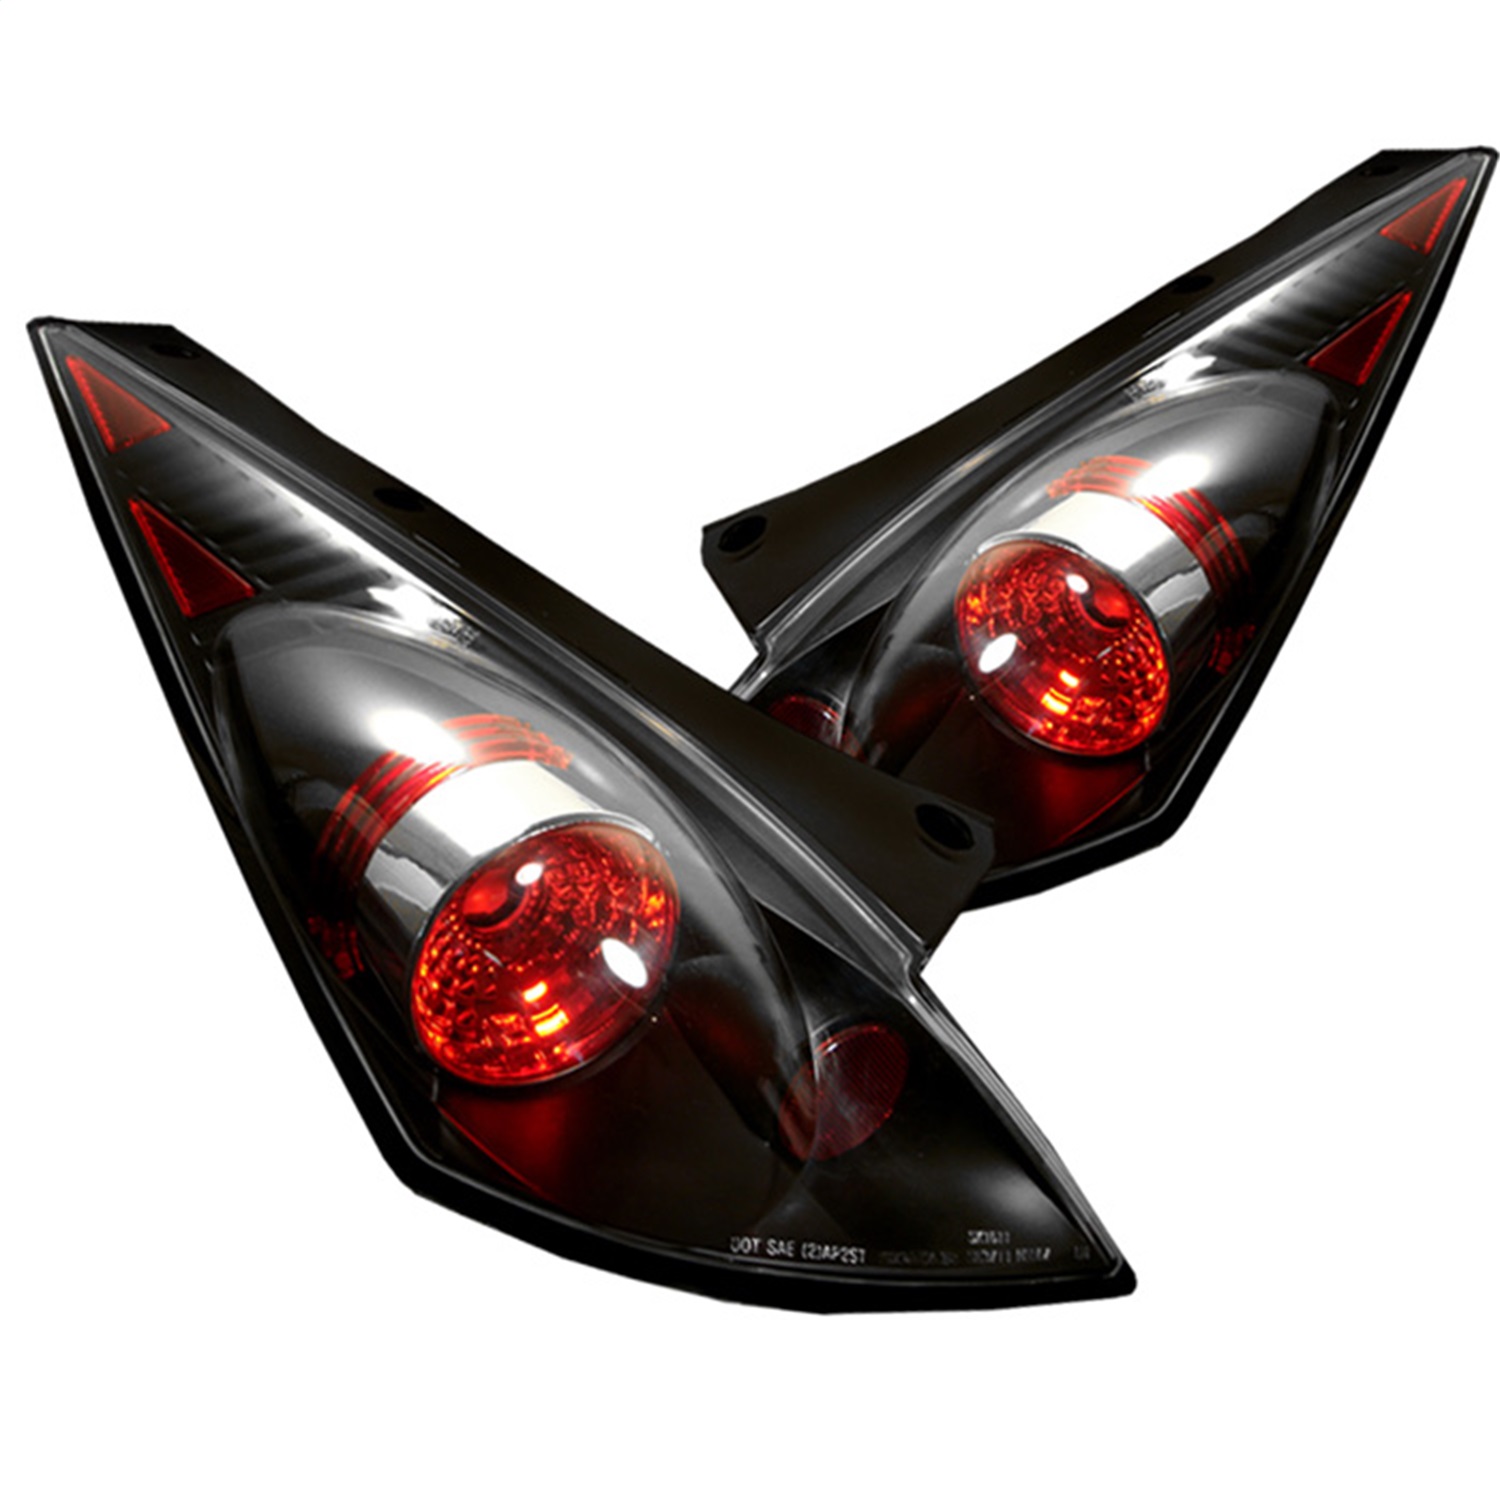 Spyder Auto 5006684 Euro Style Tail Lights Fits 03-05 350Z